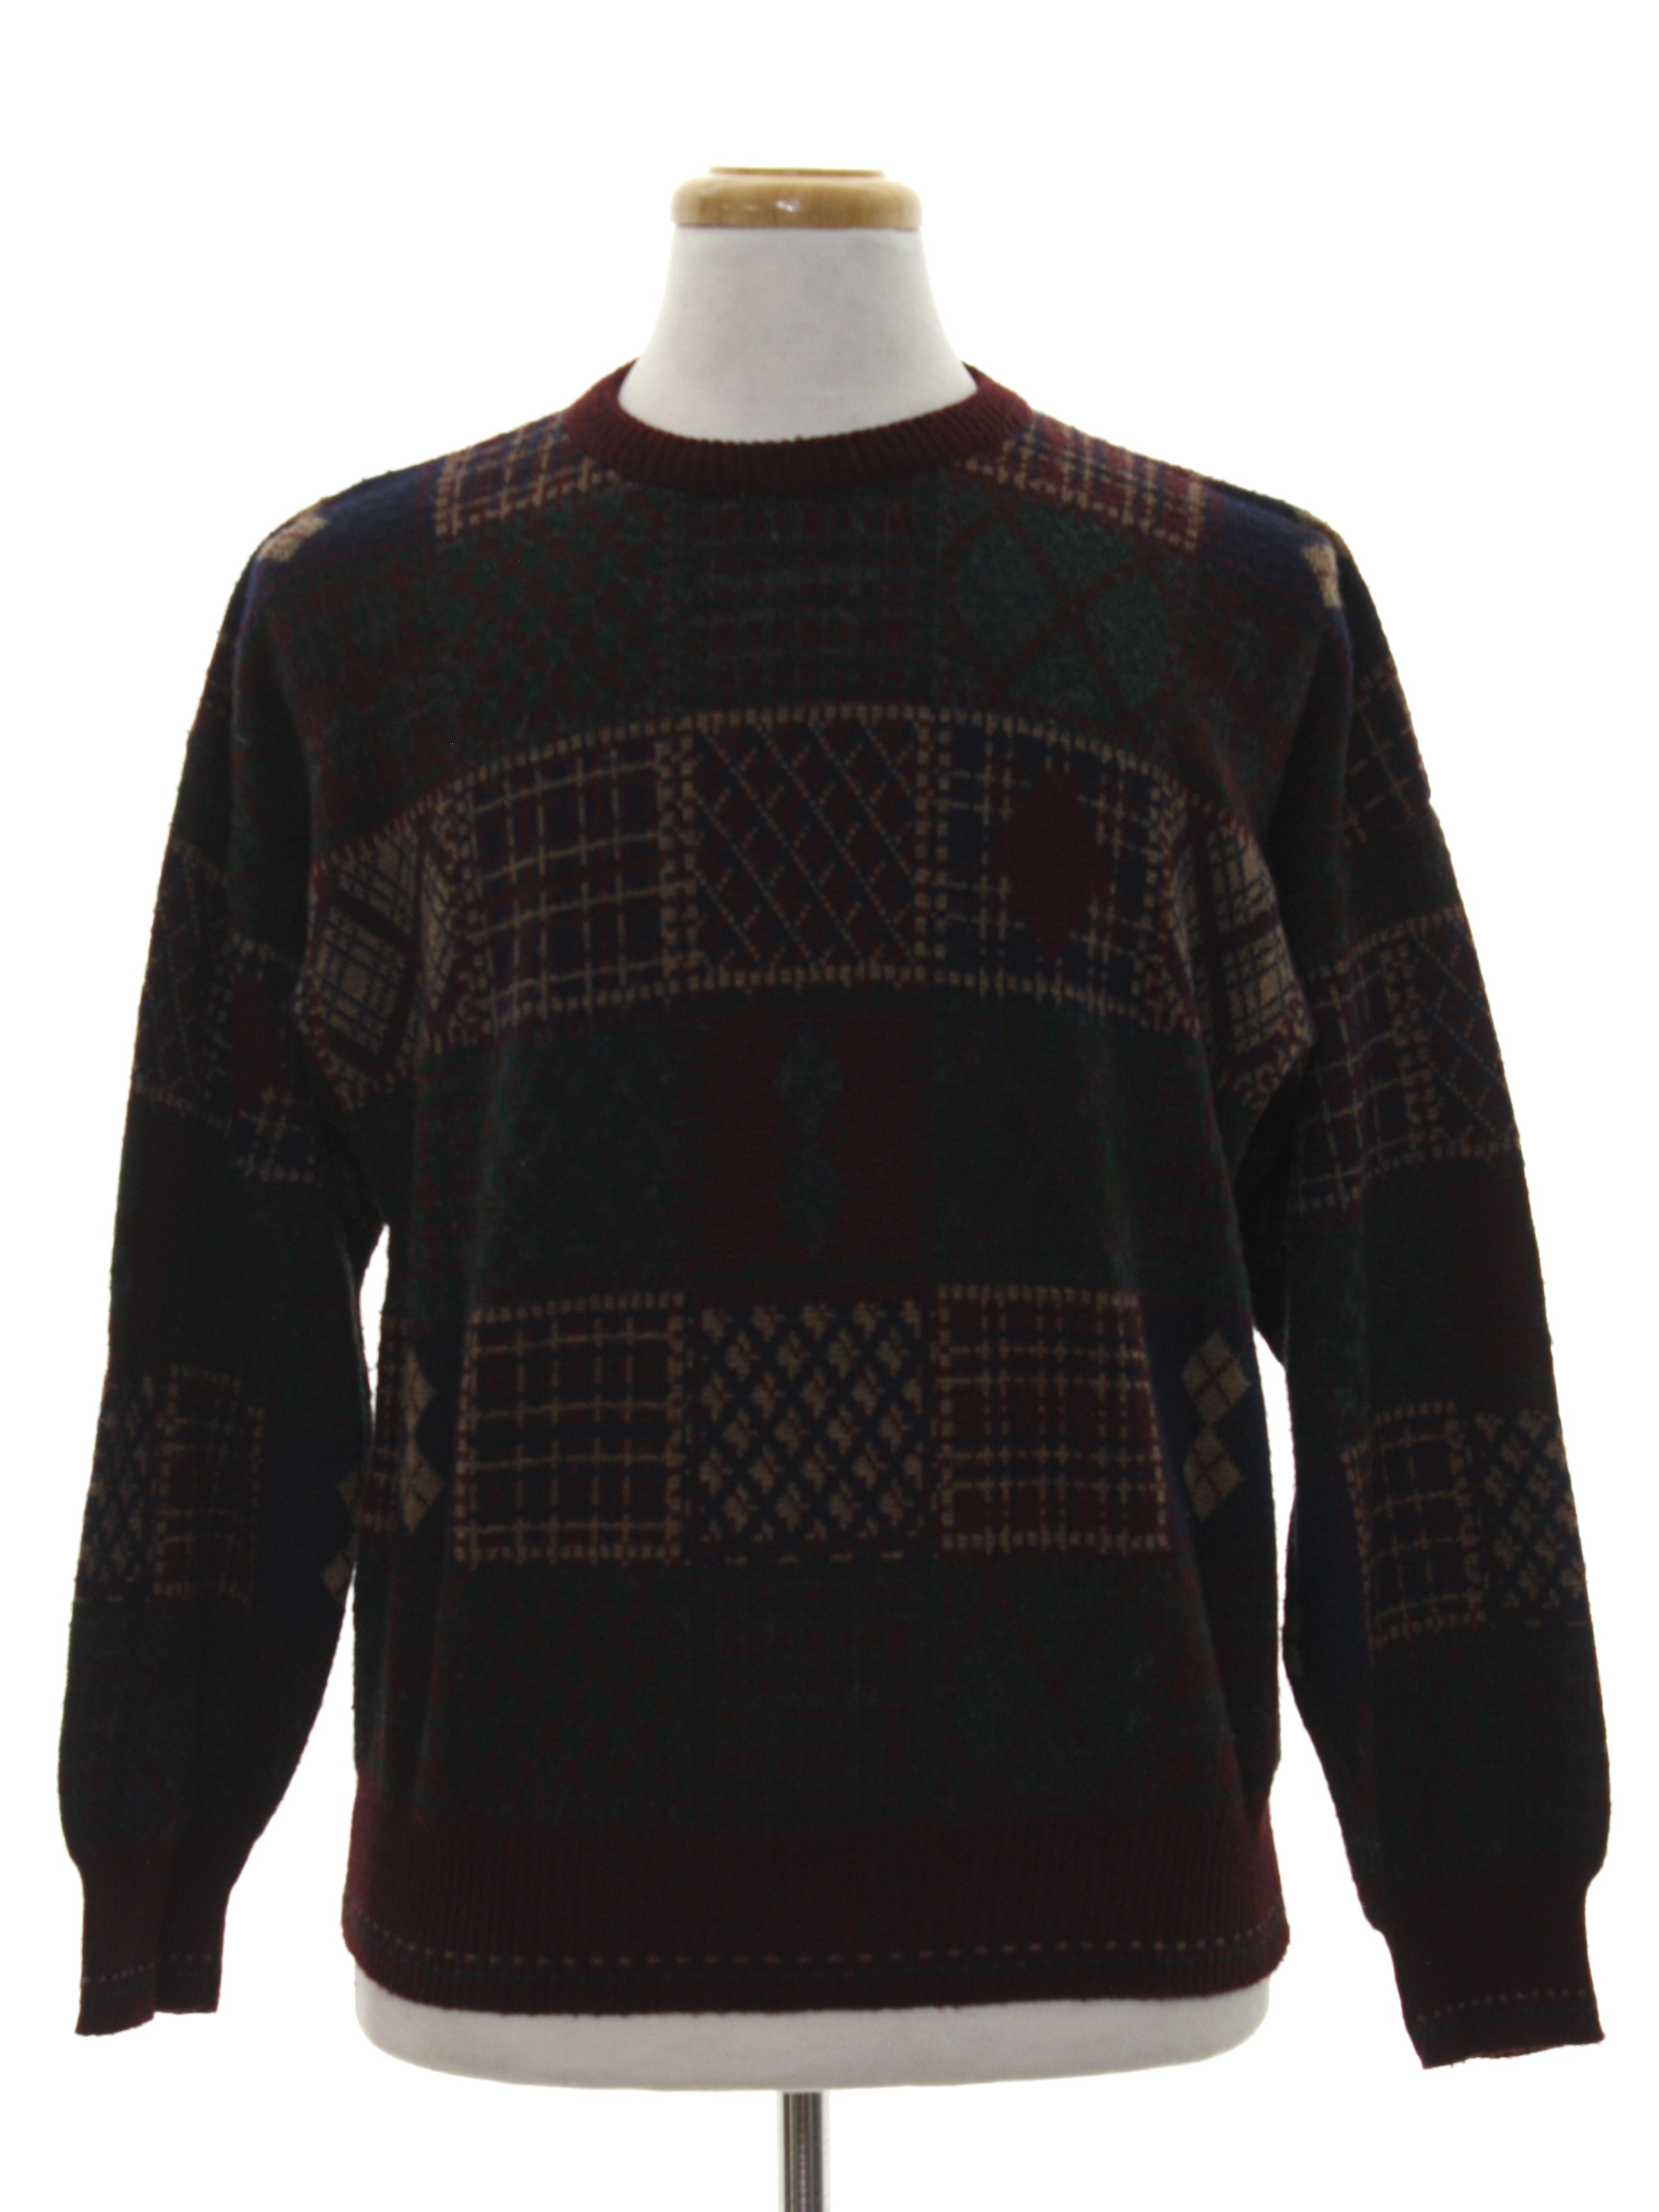 Eighties Vintage Sweater: 80s -Made in Italy- Mens burgundy, tan ...